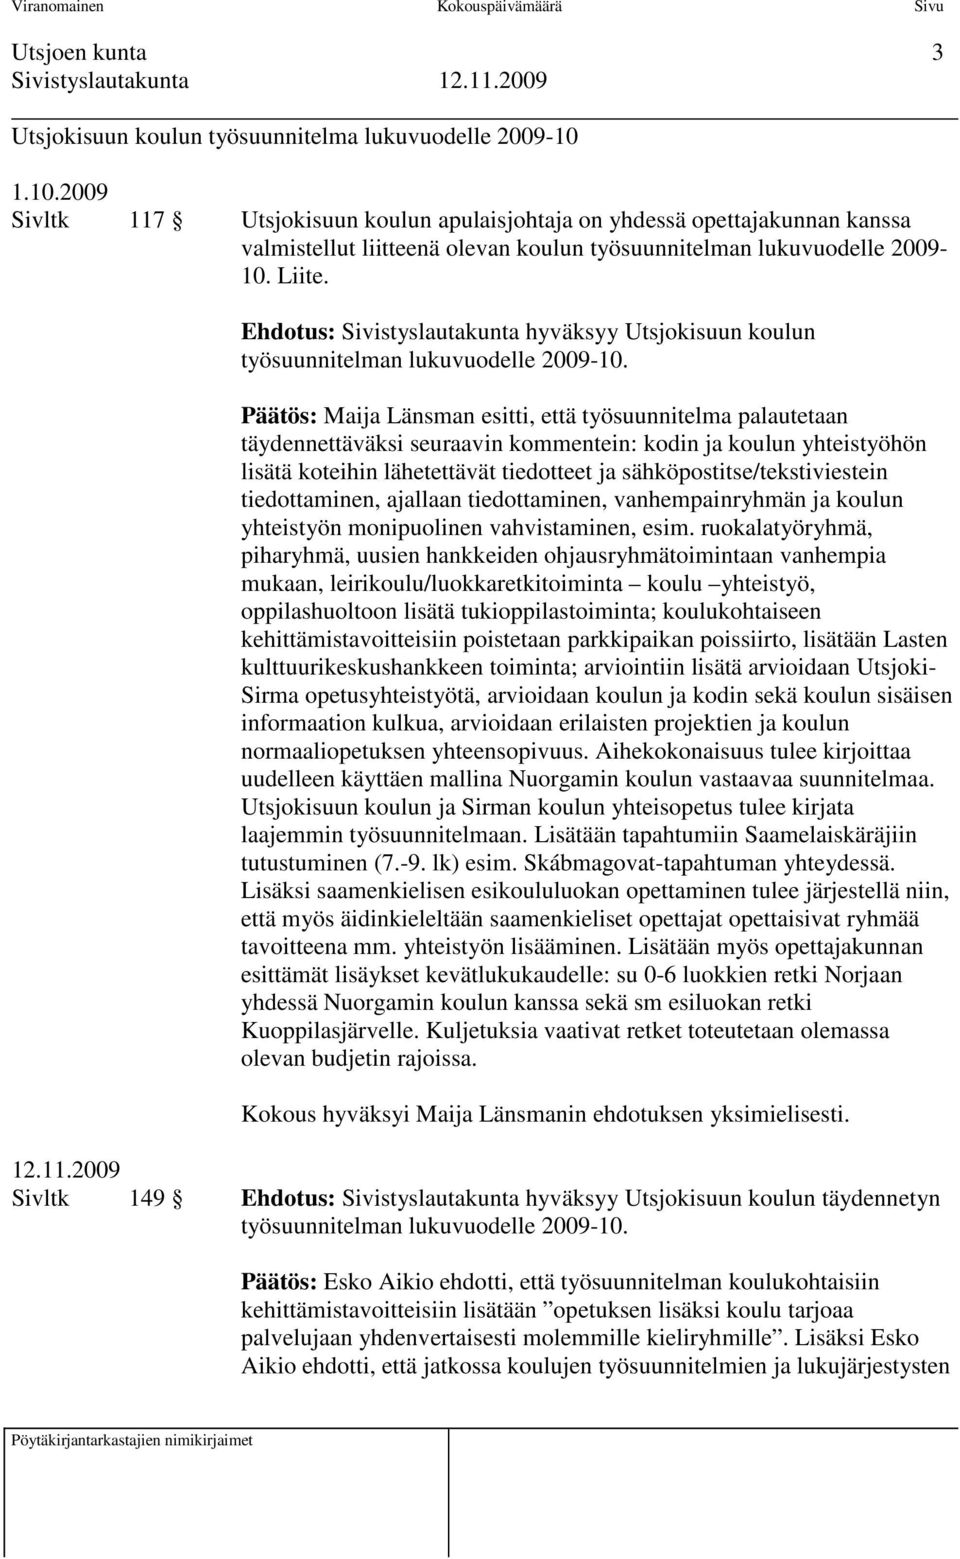 Ehdotus: Sivistyslautakunta hyväksyy Utsjokisuun koulun työsuunnitelman lukuvuodelle 2009-10.